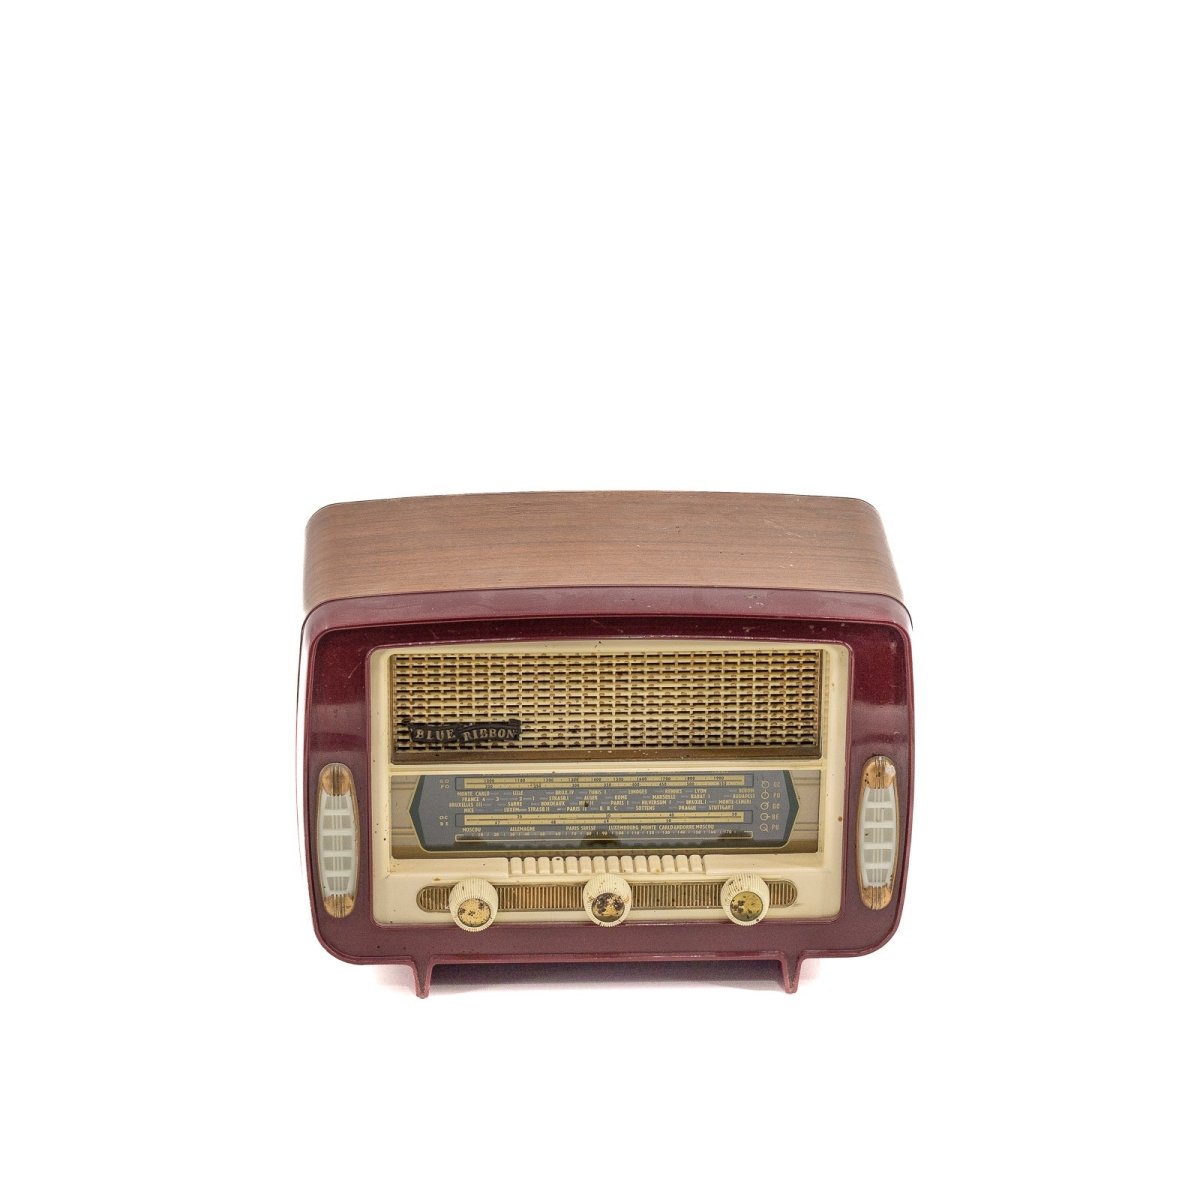 Radio Bluetooth Blueribbon Vintage 50’S enceinte connectée française haut de gamme absolument prodige radio vintage